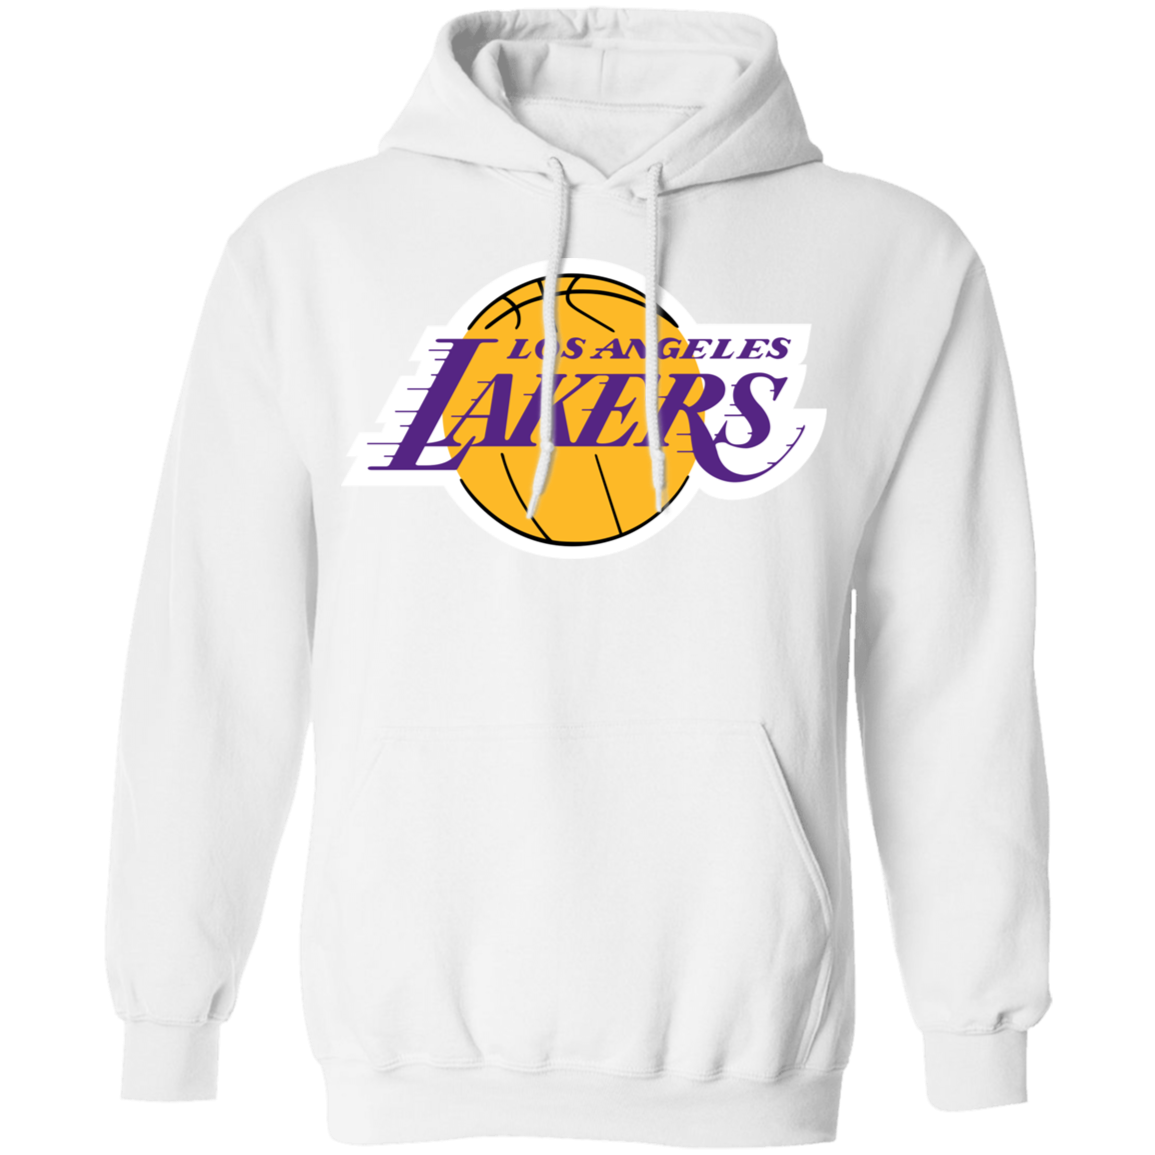 Gildan Los Angeles Lakers Logo Pullover Hoodie Black M